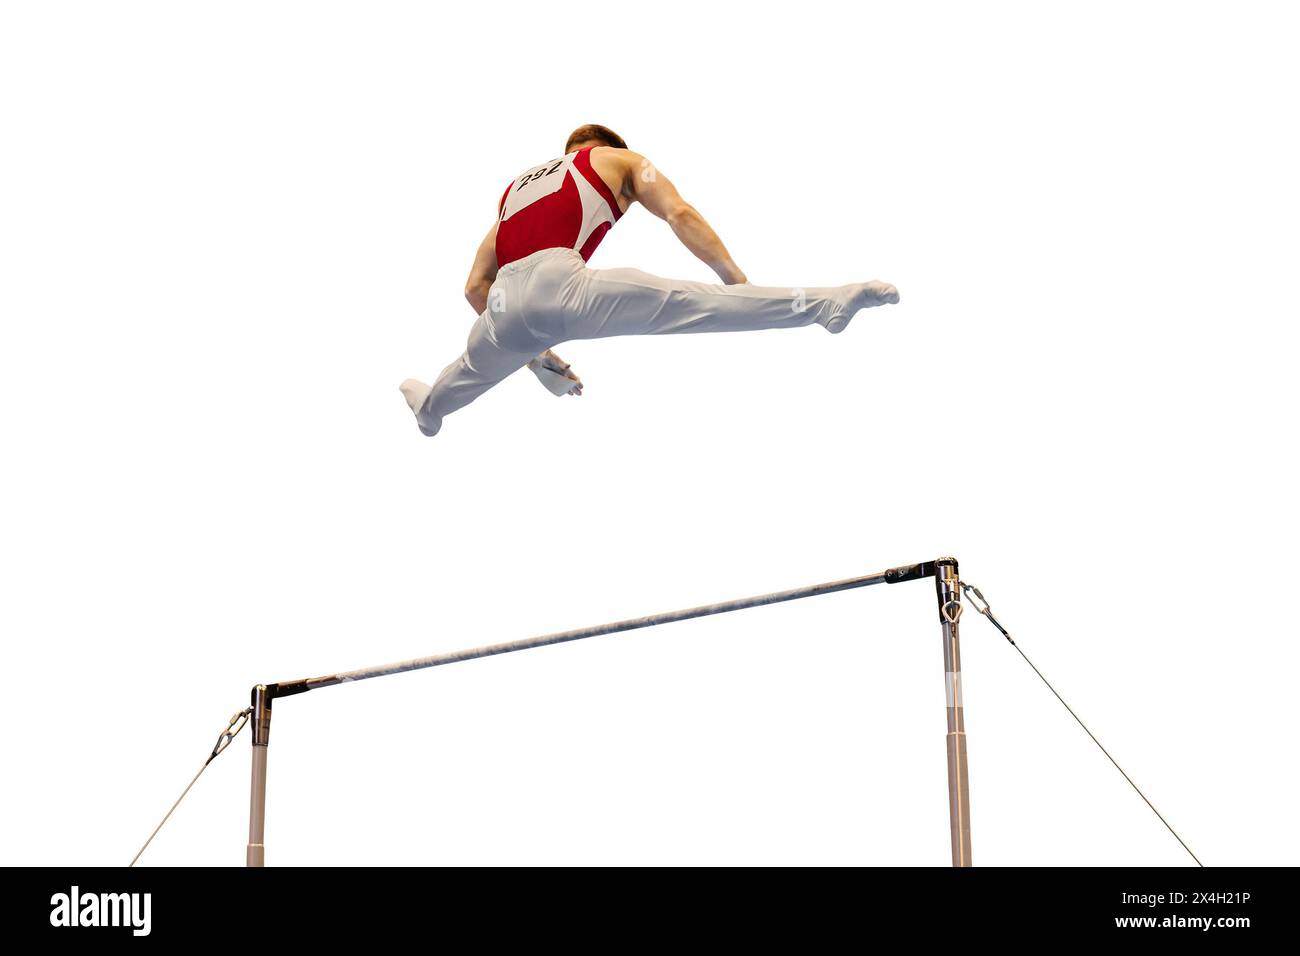 athlète gymnaste exerçant sur la barre horizontale, isolé sur fond blanc Banque D'Images